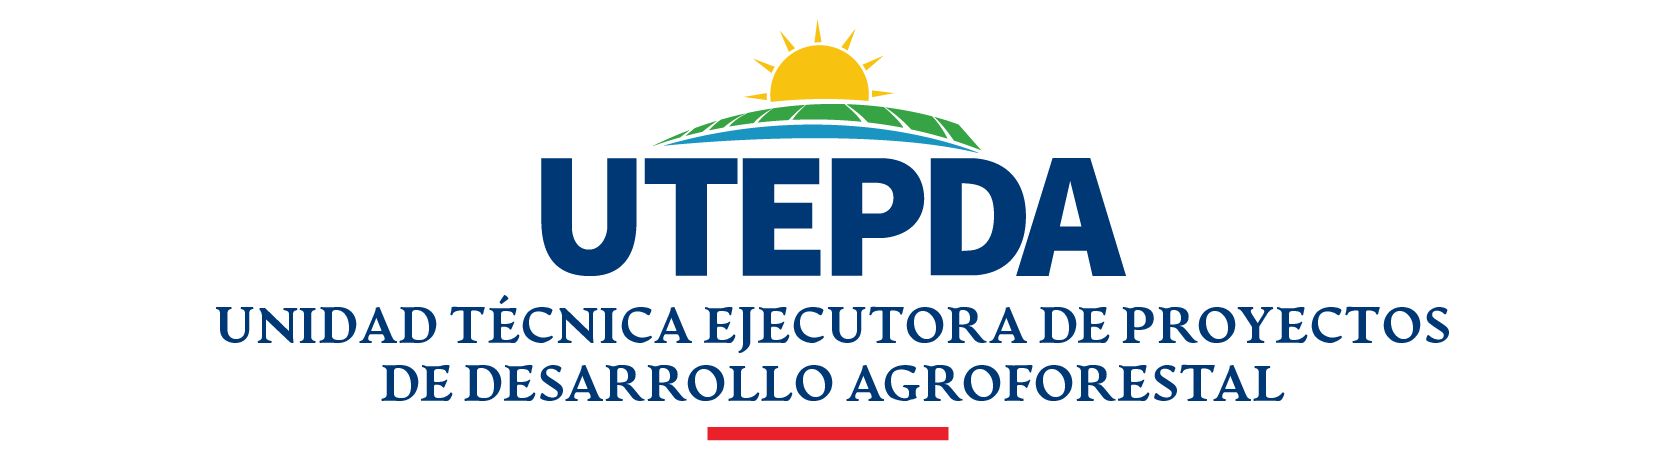 Logo UTEPDA 400X110PX